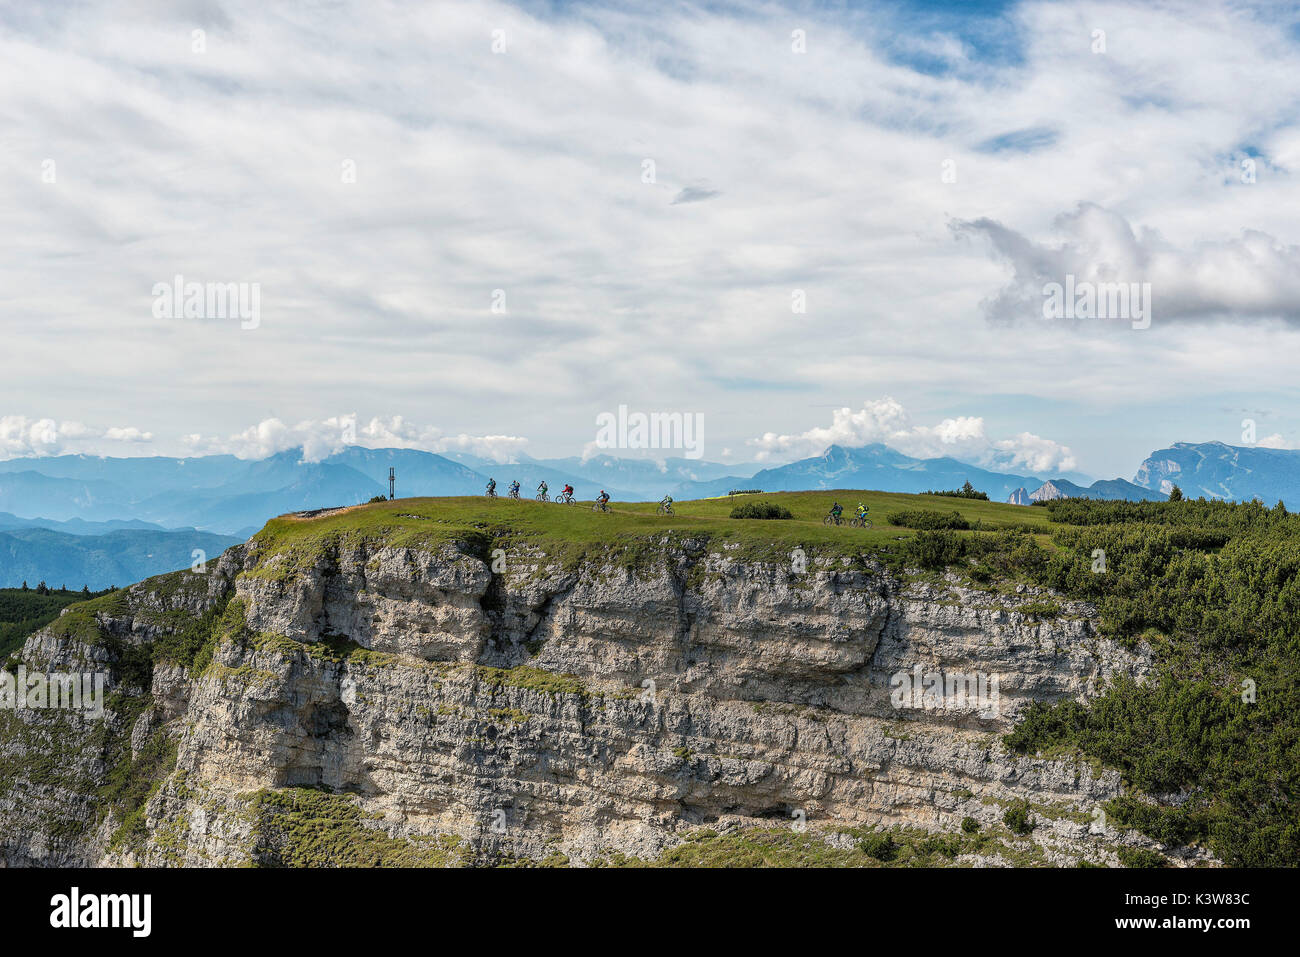 Les motards au sommet de mont Roen, Val di Non, Trentin-Haut-Adige, Italie Banque D'Images